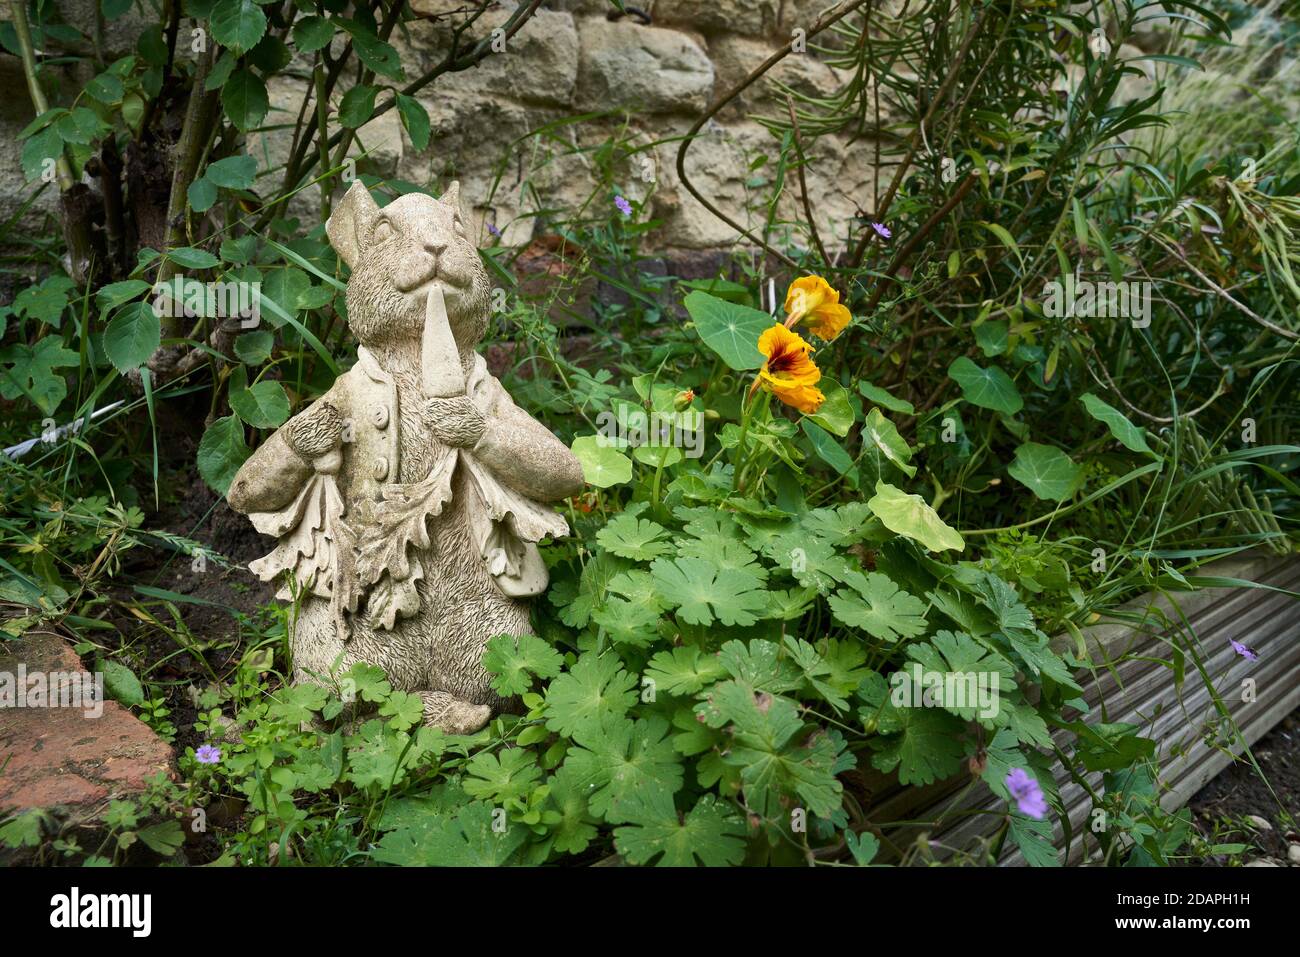 Cast statua giardino in cemento del personaggio Peter Rabbit mangiare una carota in un giardino troppo cresciuto bordo contro una pietra parete Foto Stock